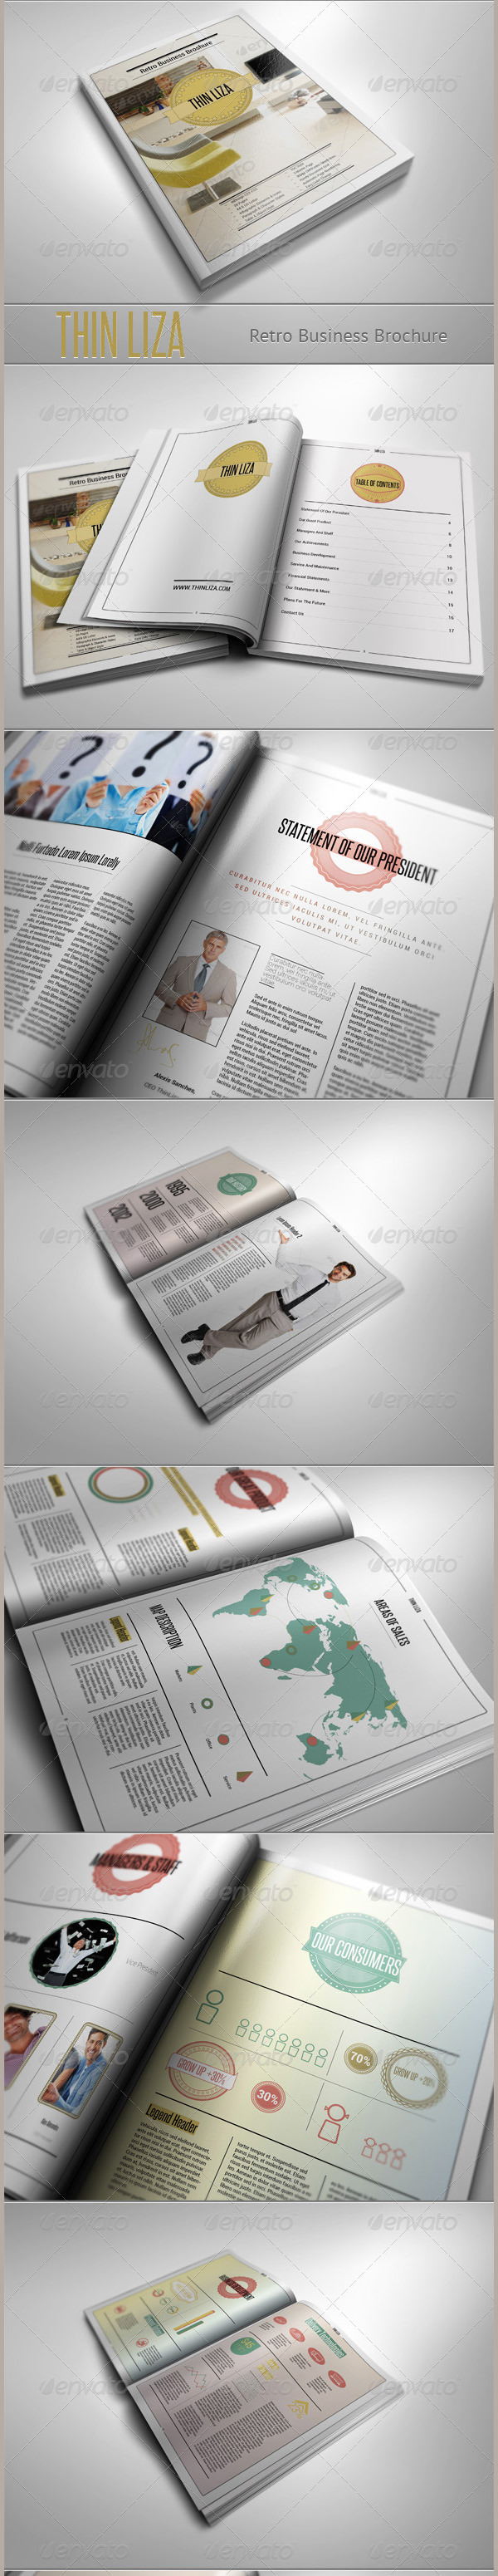 thin-liza-retro-business-brochure